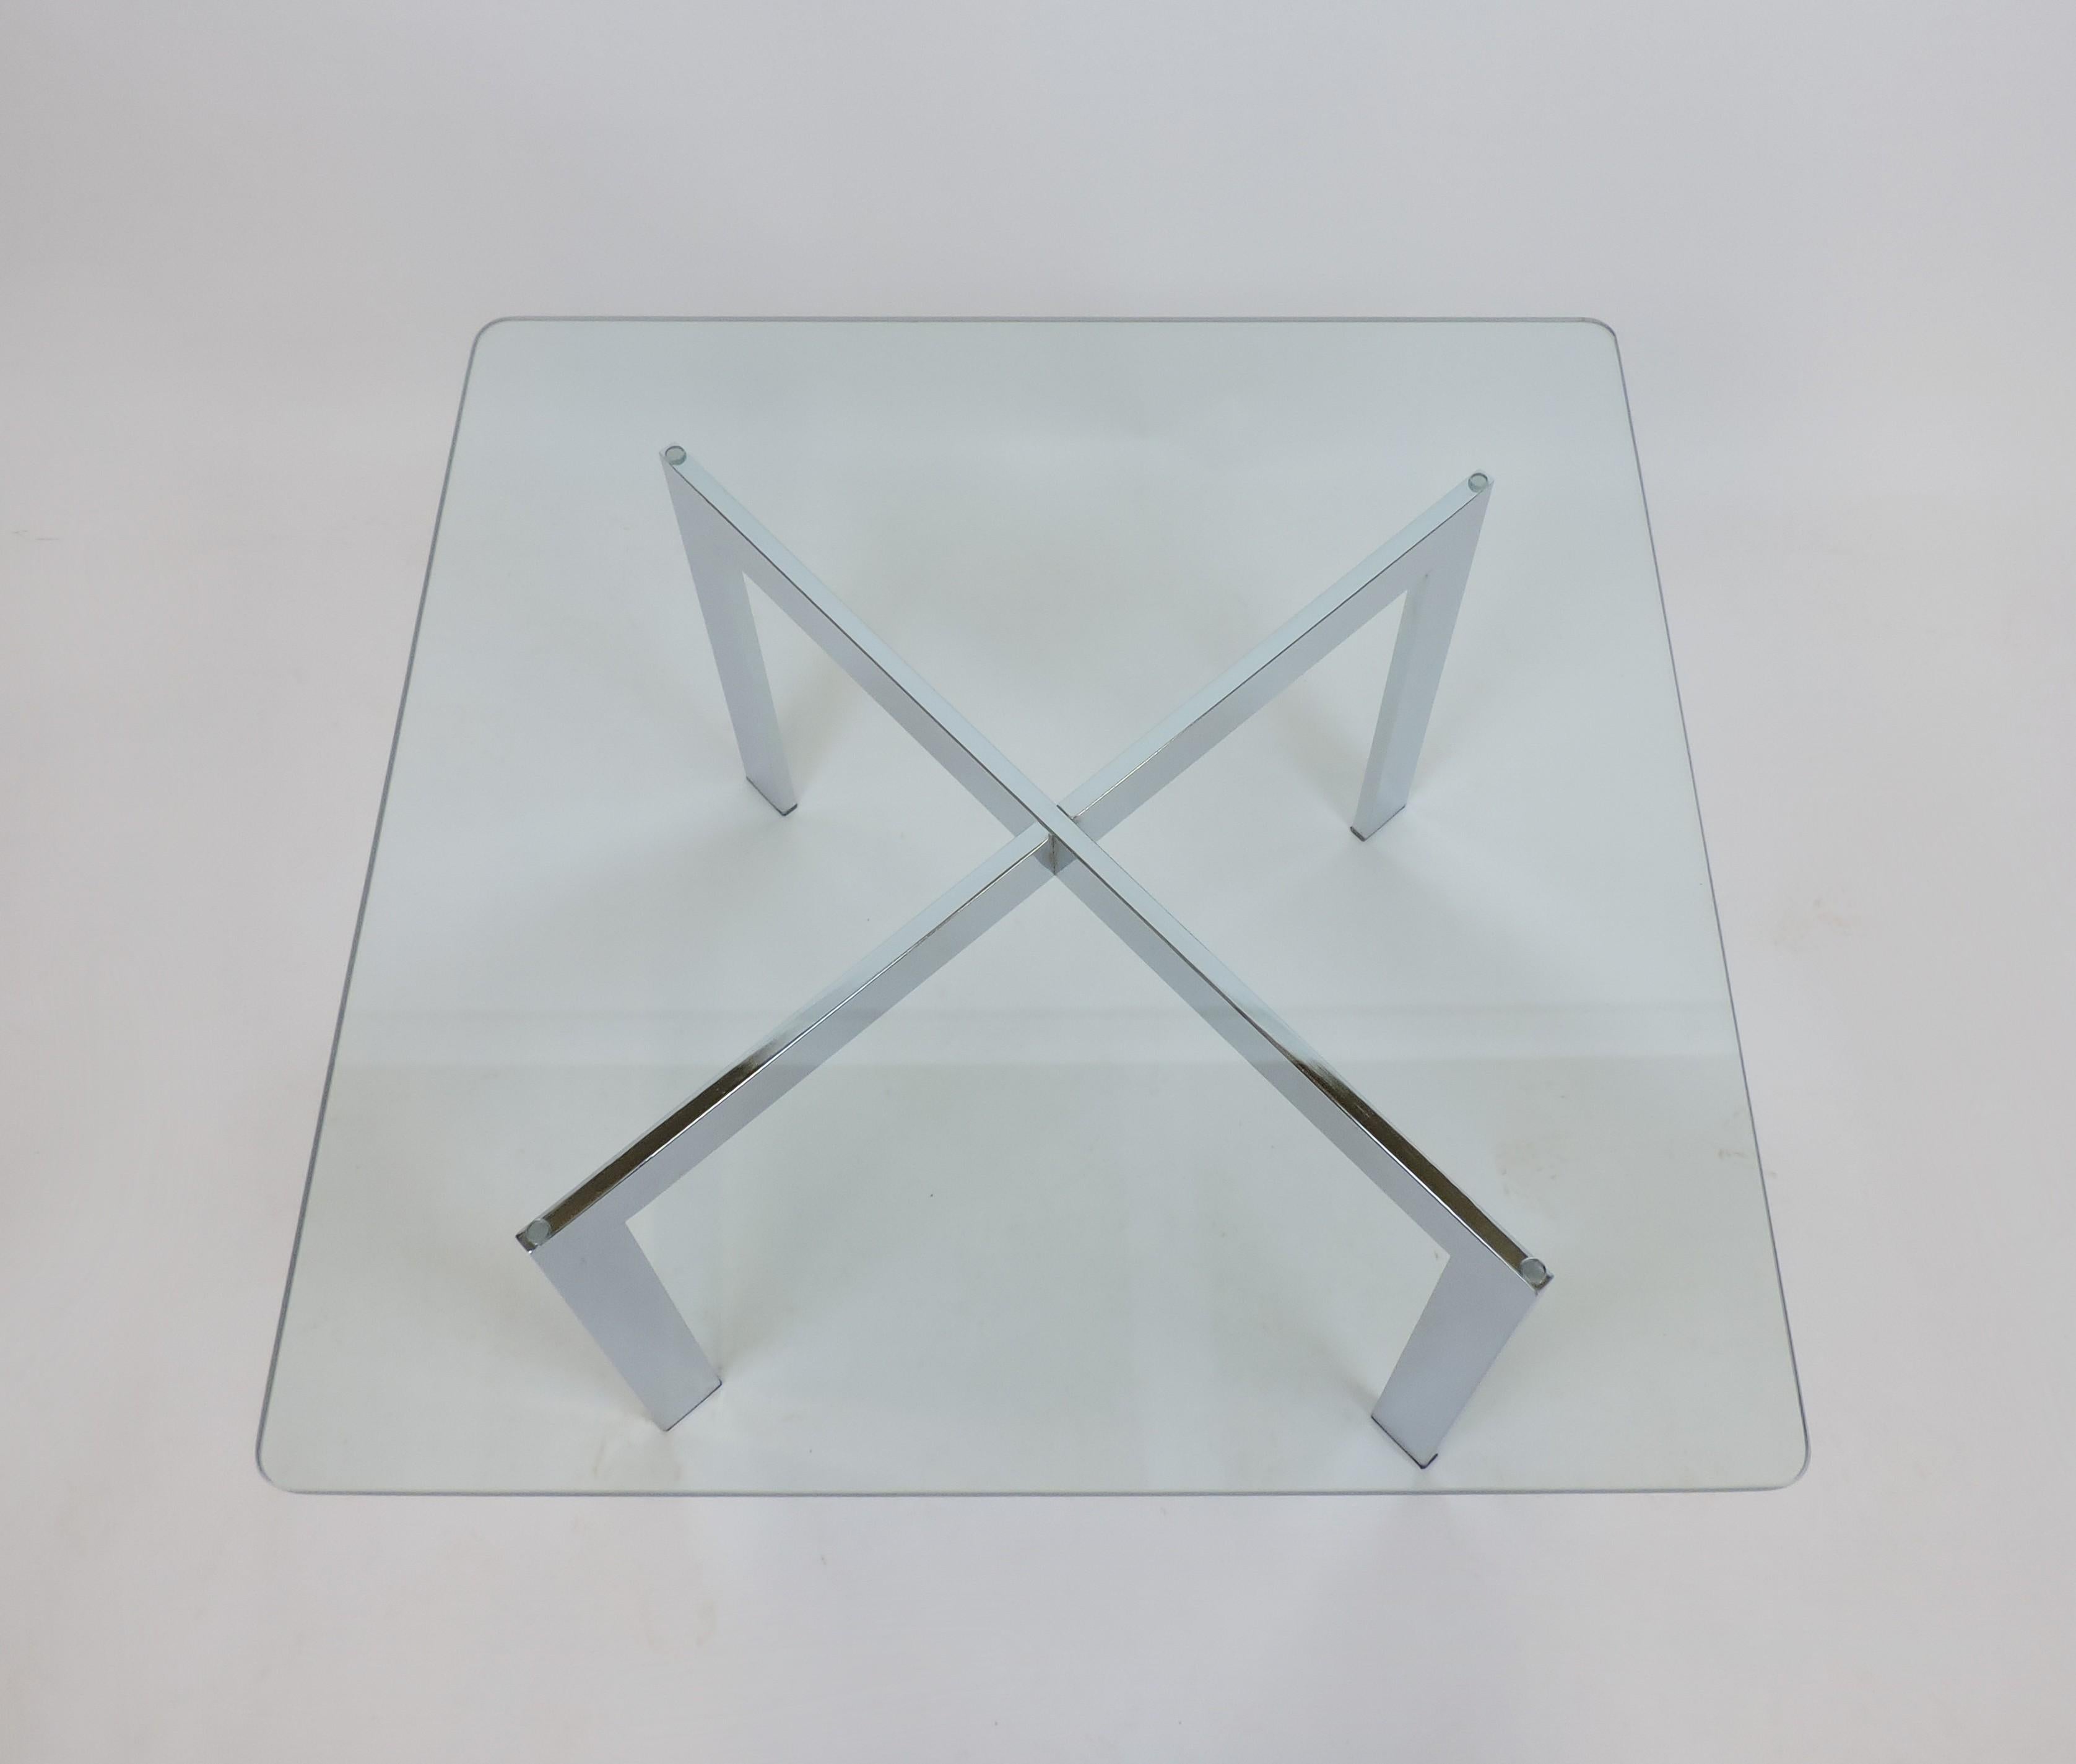 Table basse ou d'appoint classique de style barcelonais à base en X. Cette table est dotée d'une base chromée et d'un lourd plateau en verre transparent de 1/2